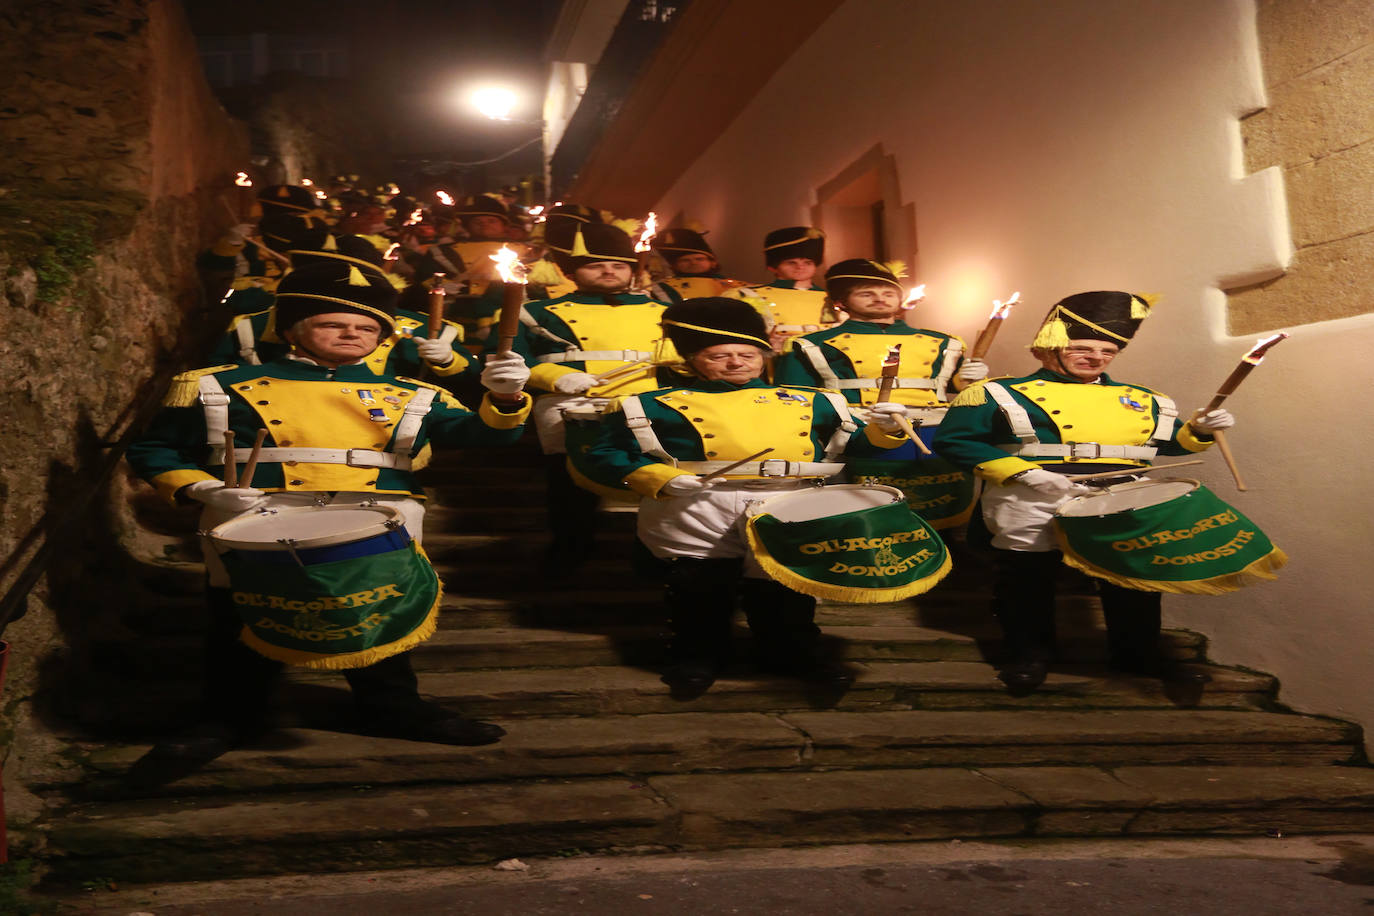 Fotos: El desfile de Ollagorra, en imágenes